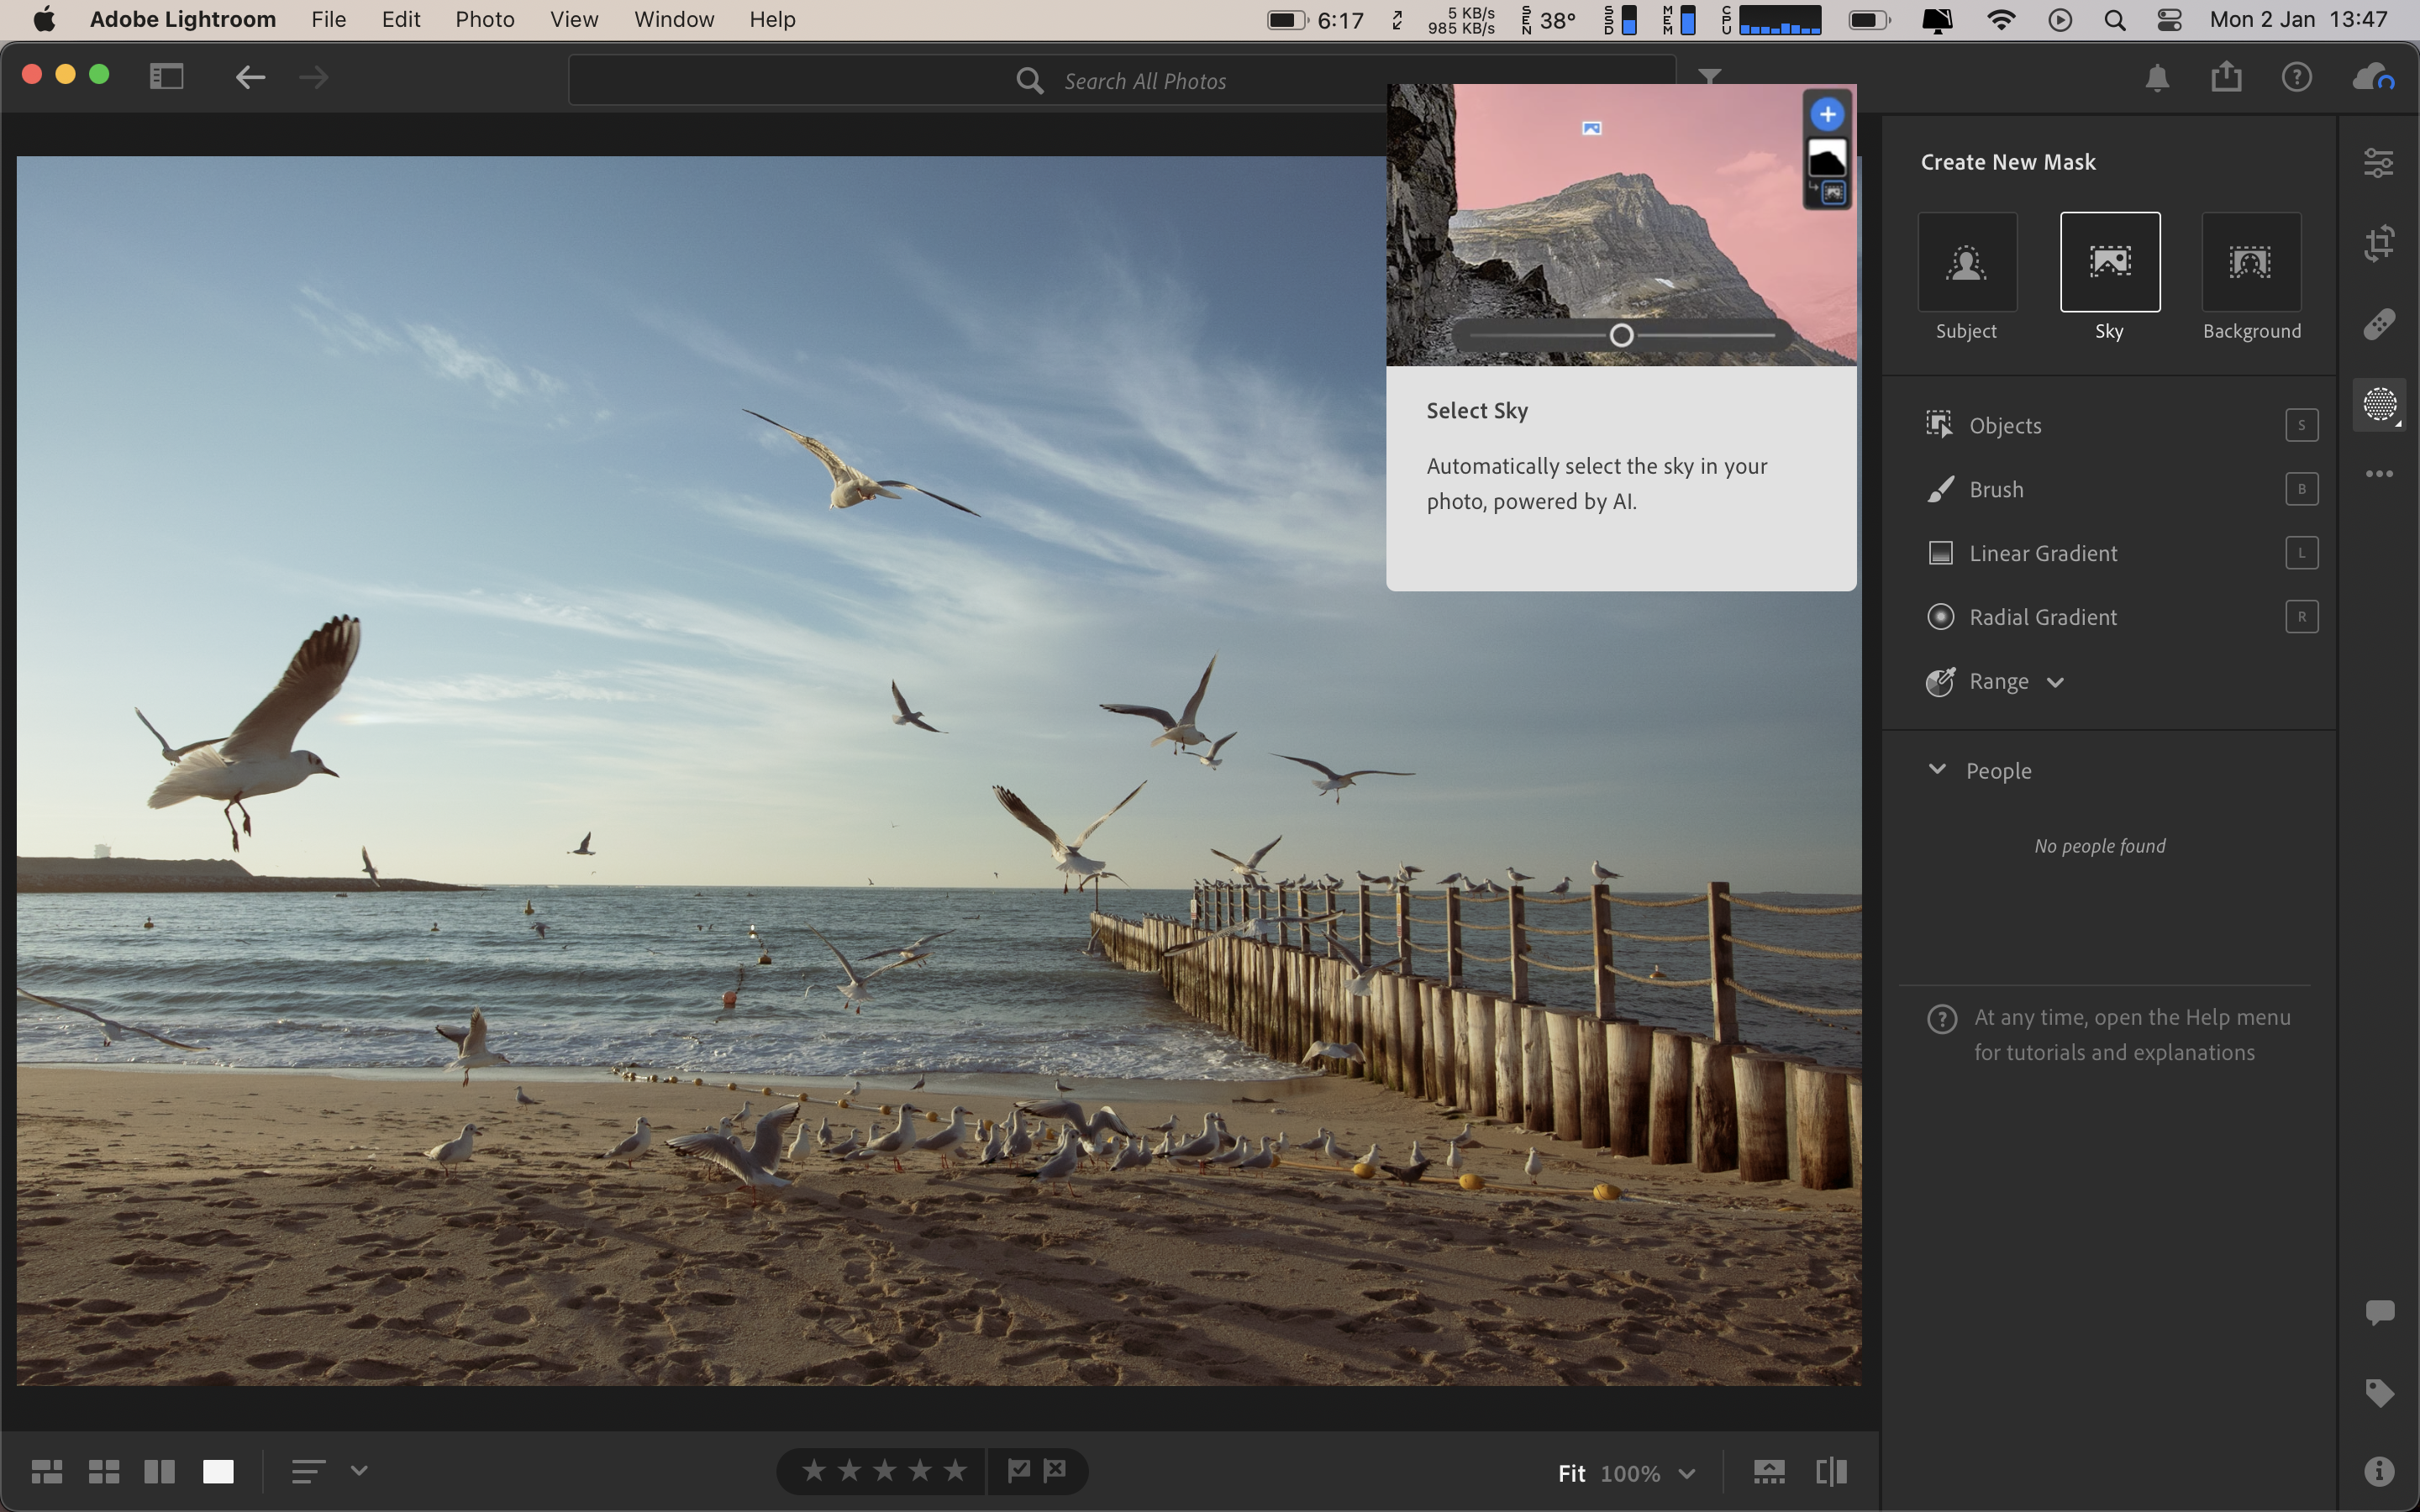 Adobe Lightroom Desktop Review